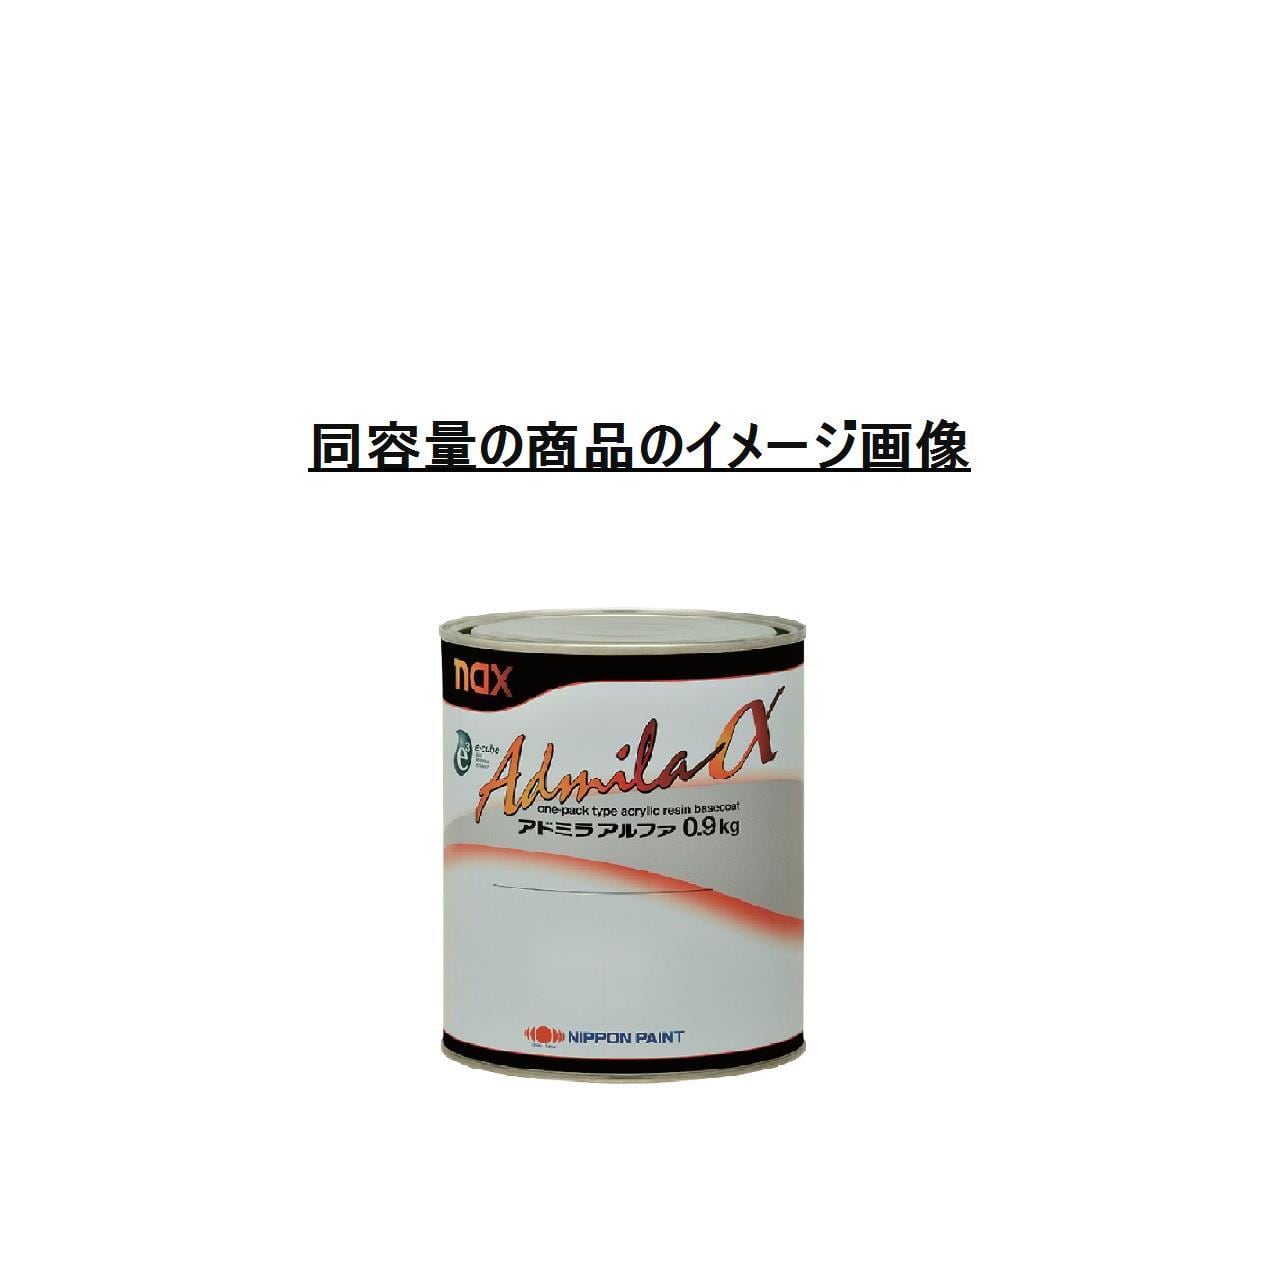 【未使用品】日本ペイント nax アドミラ 622 ゲイリーエロー 0.9L